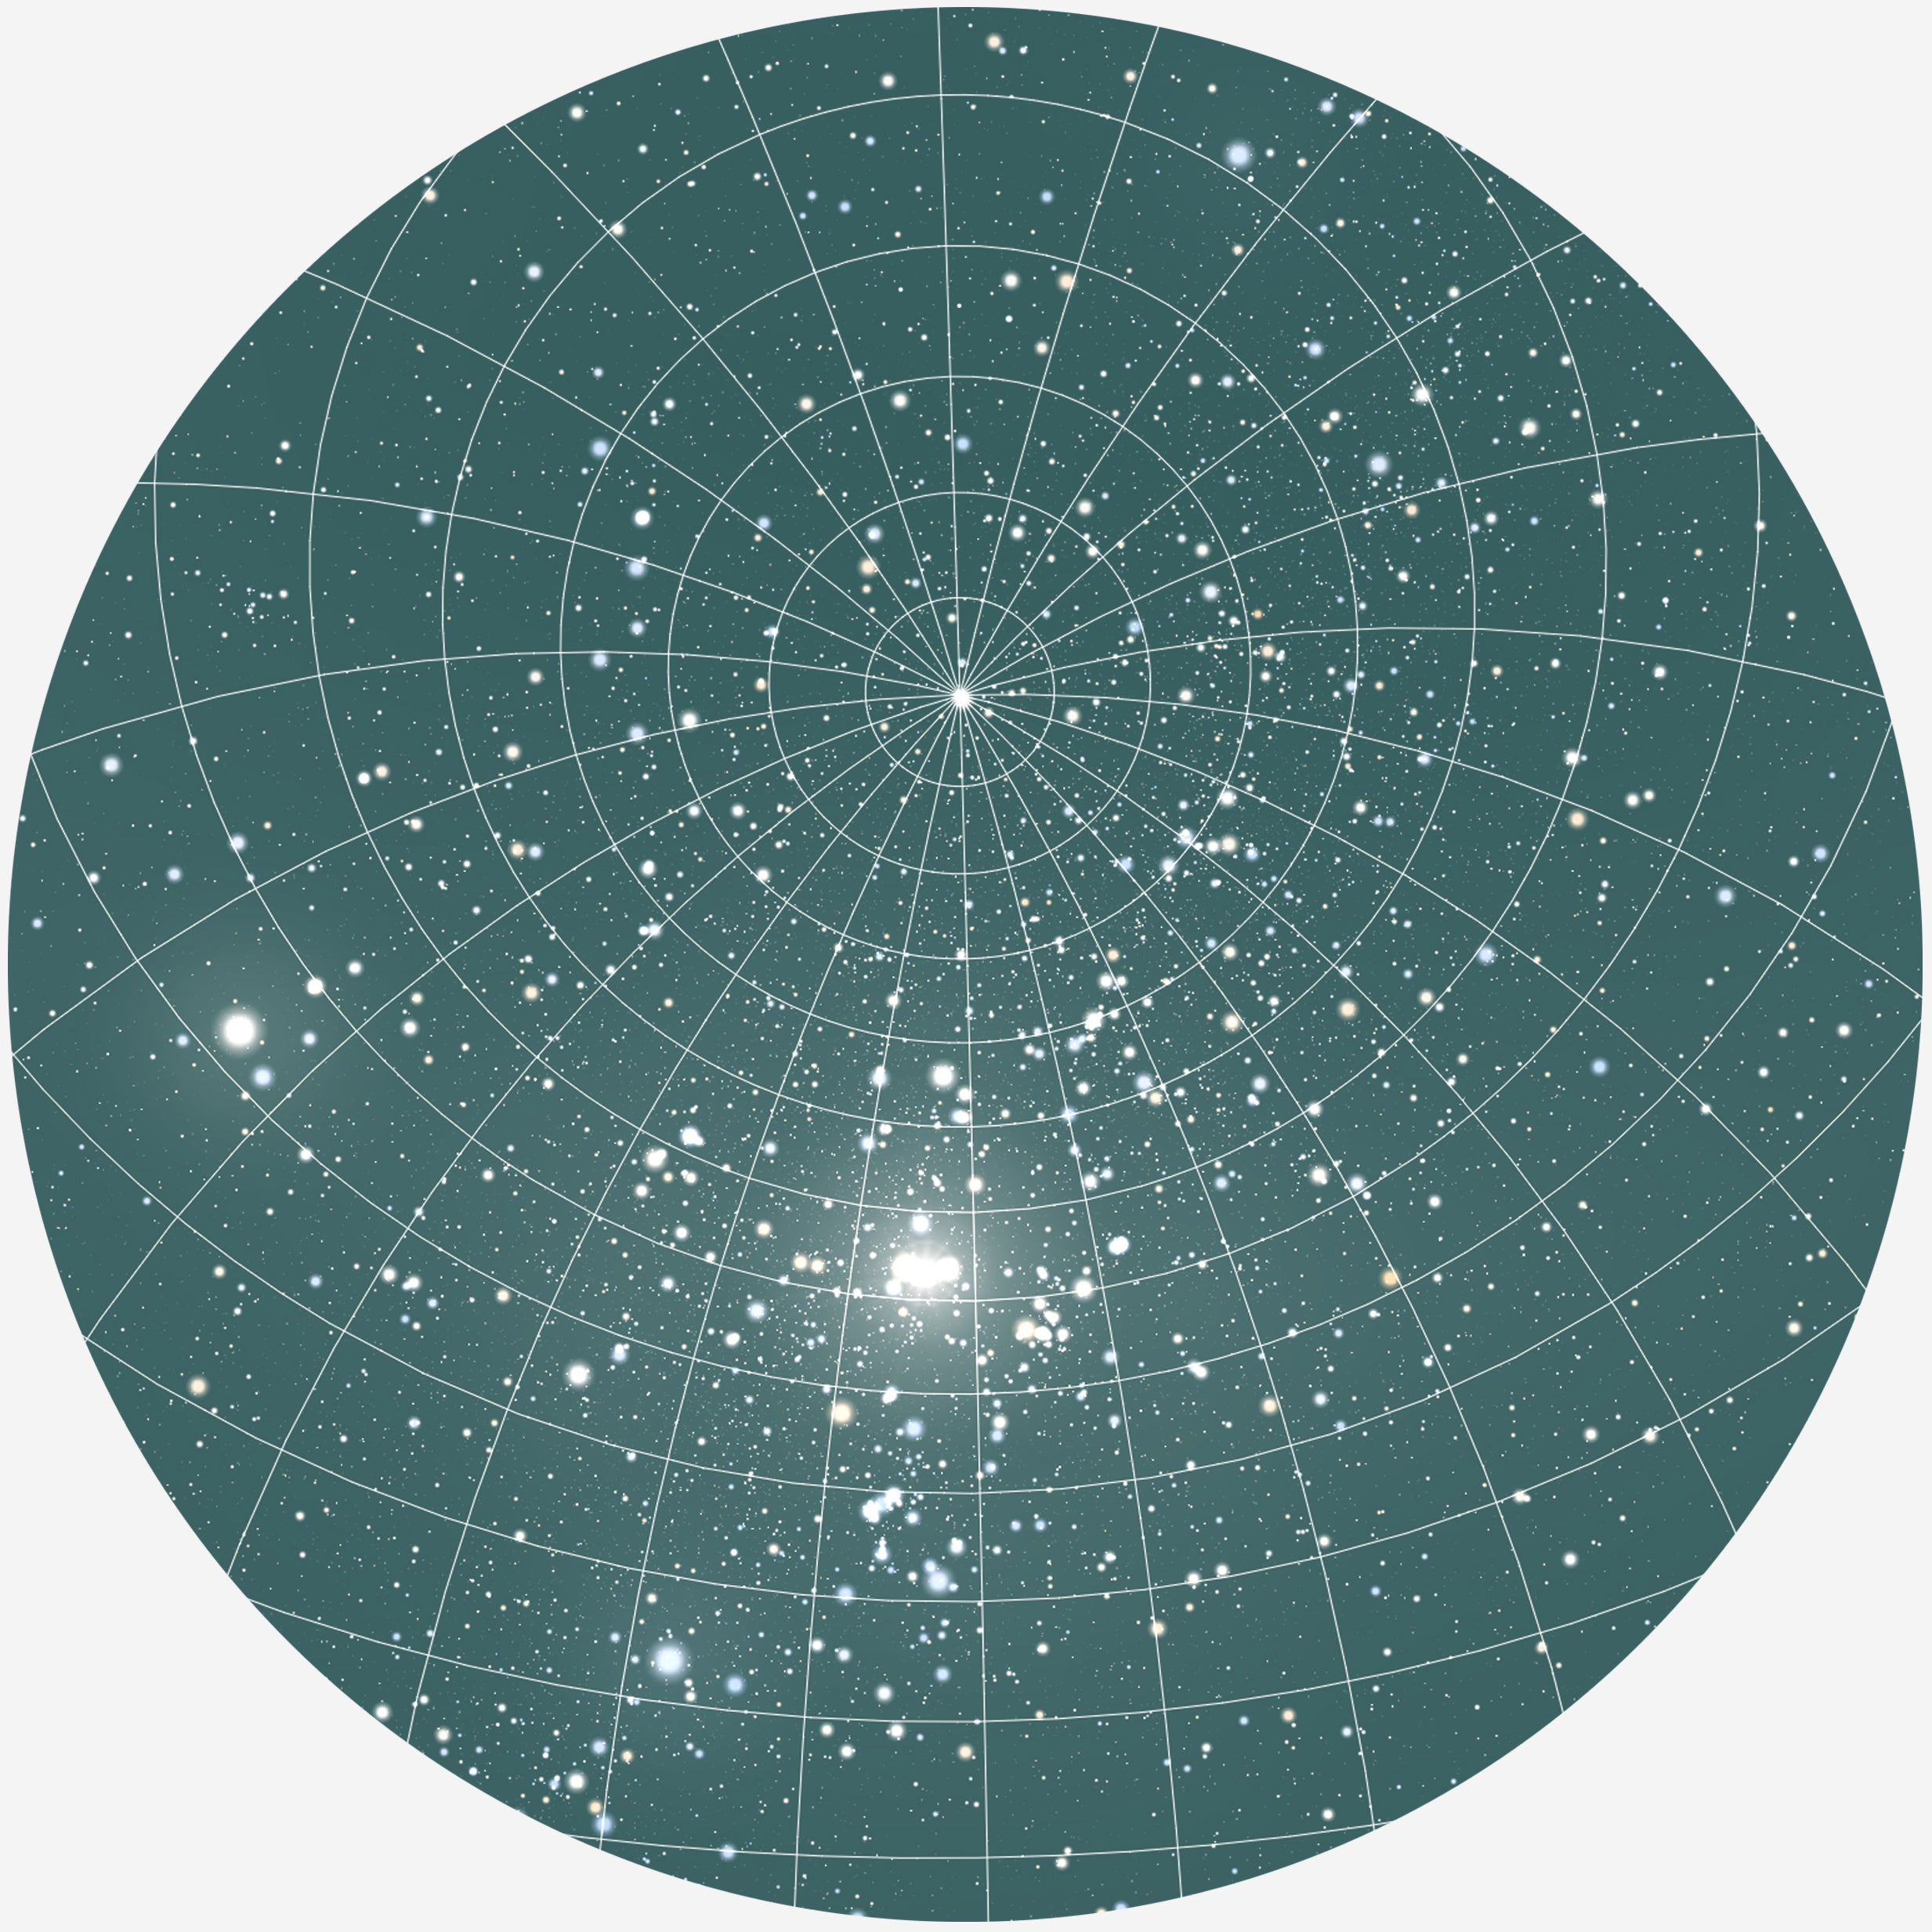 Se RUND PLAKAT MED PERSONLIG STJERNEHIMMEL (MØRKEGRØN) - 30 cm / Stjernehimmel med gitter hos KISPUS